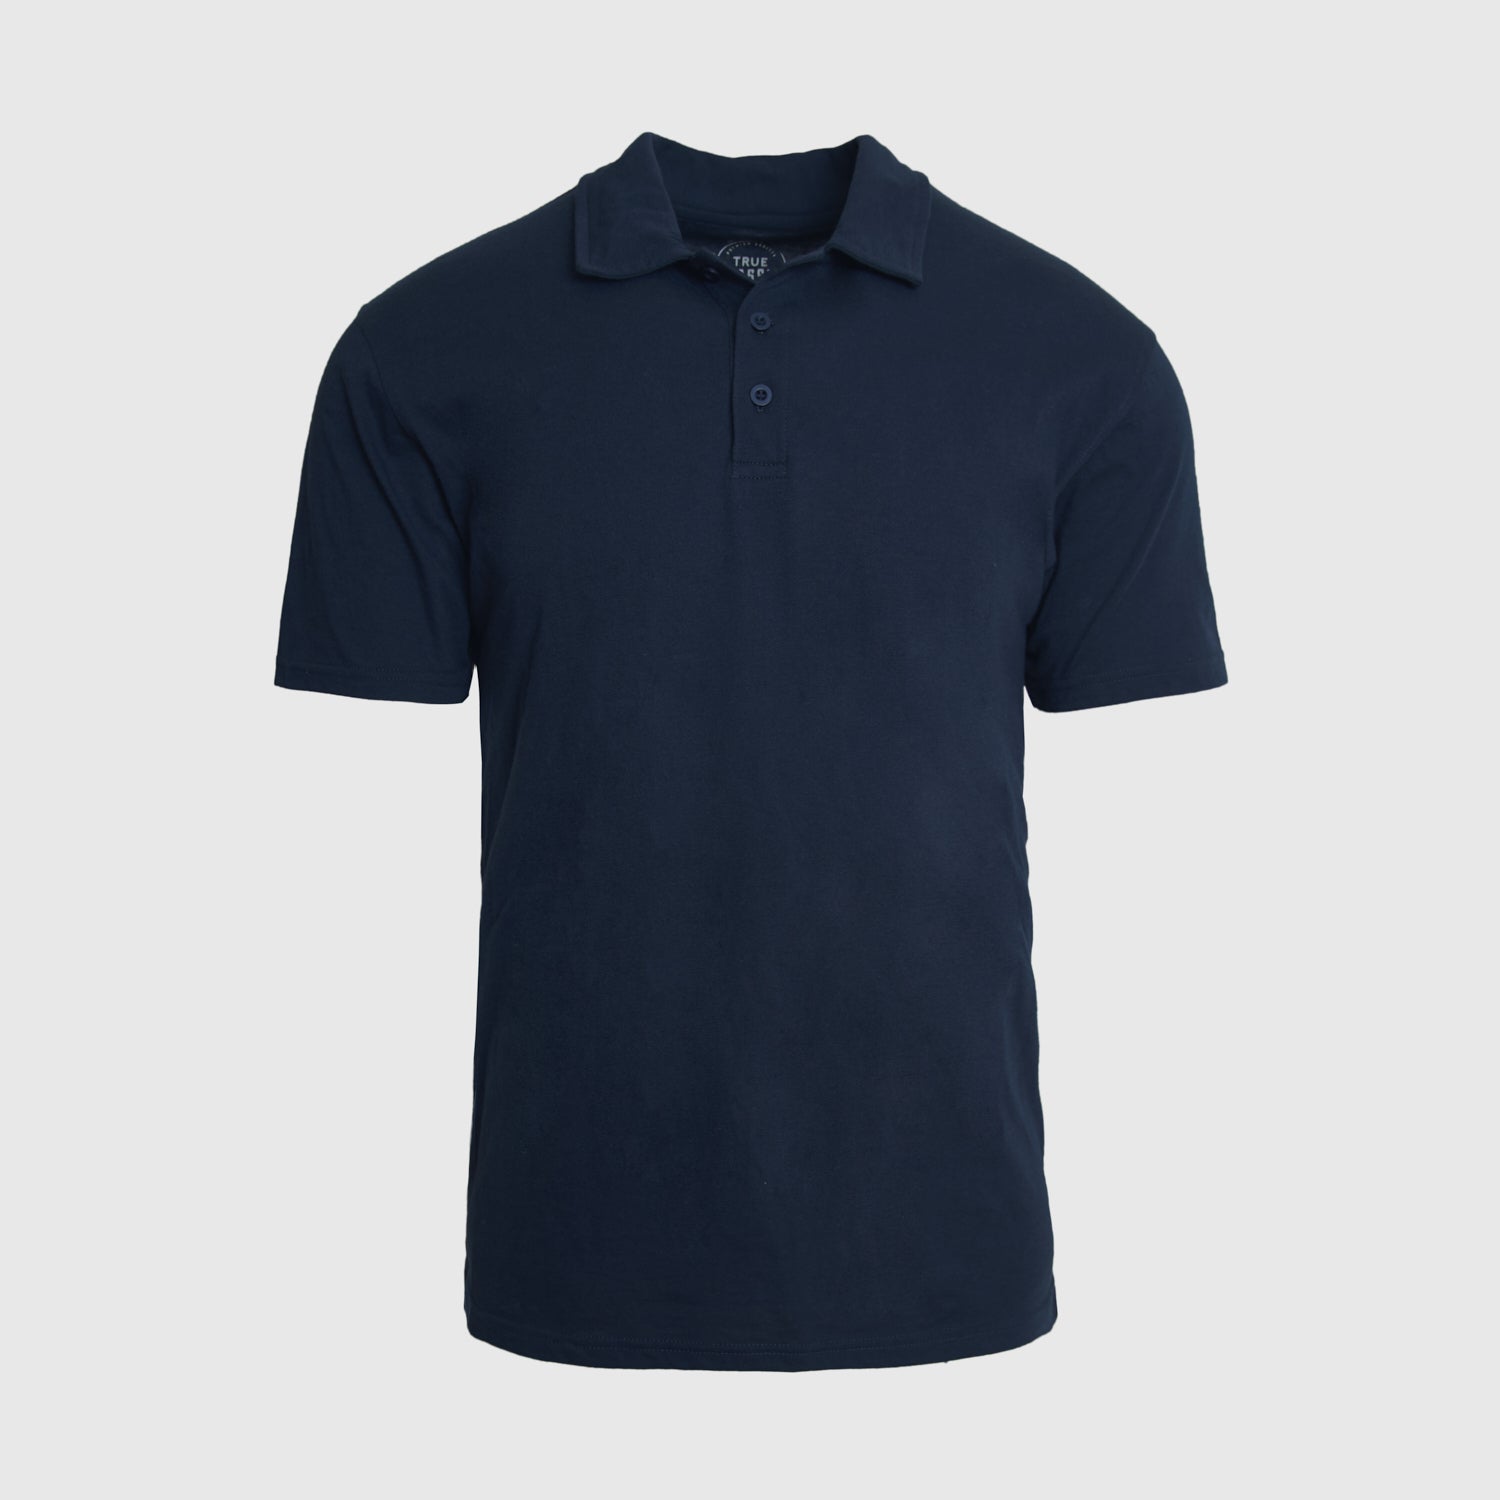 Camiseta tipo azul marino | Camisetas tipo polo azul marino para hombre | True Classic